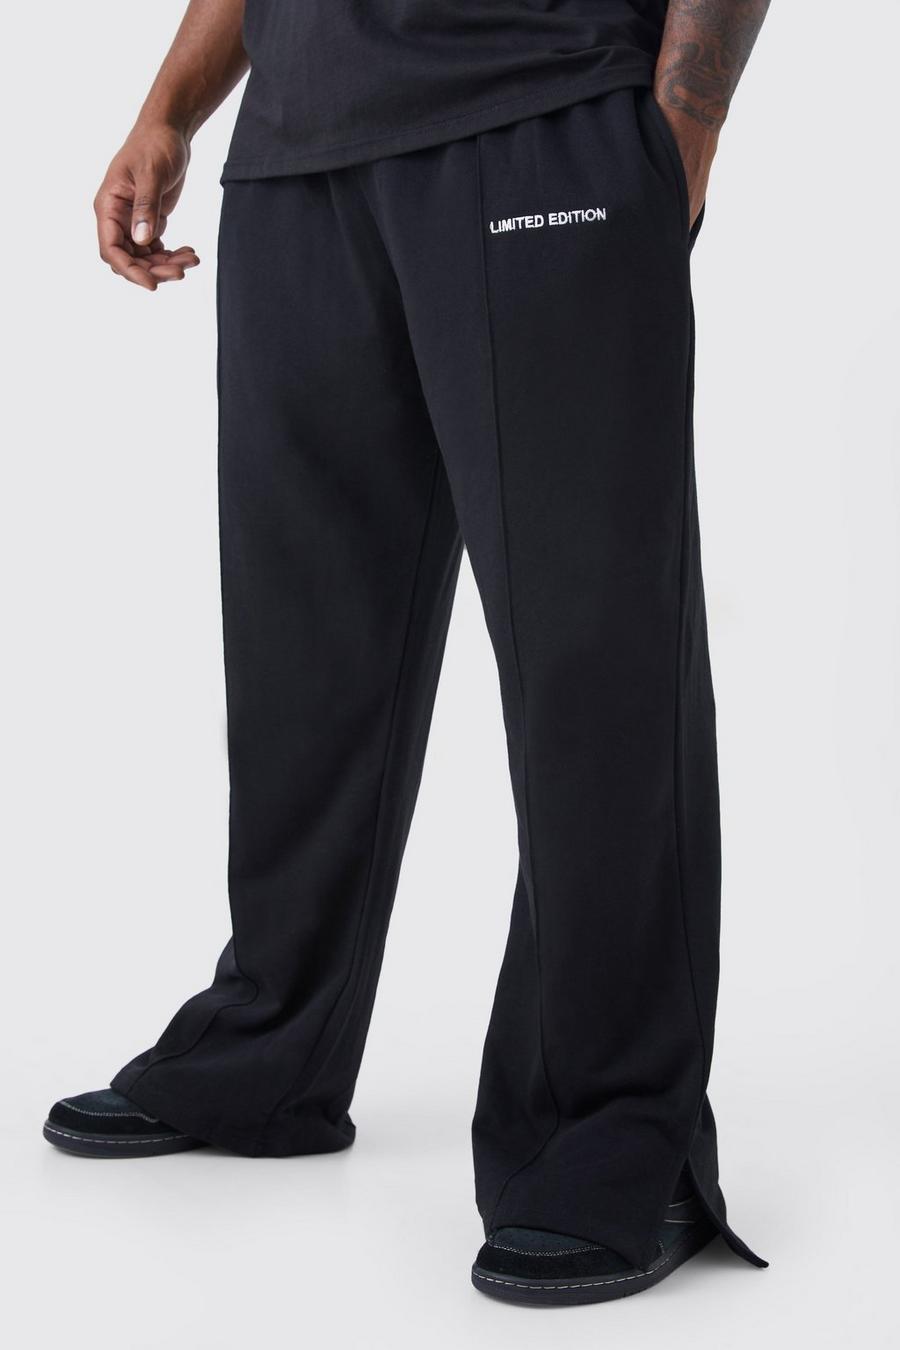 Pantalón deportivo Plus holgado grueso con abertura en el bajo, Black